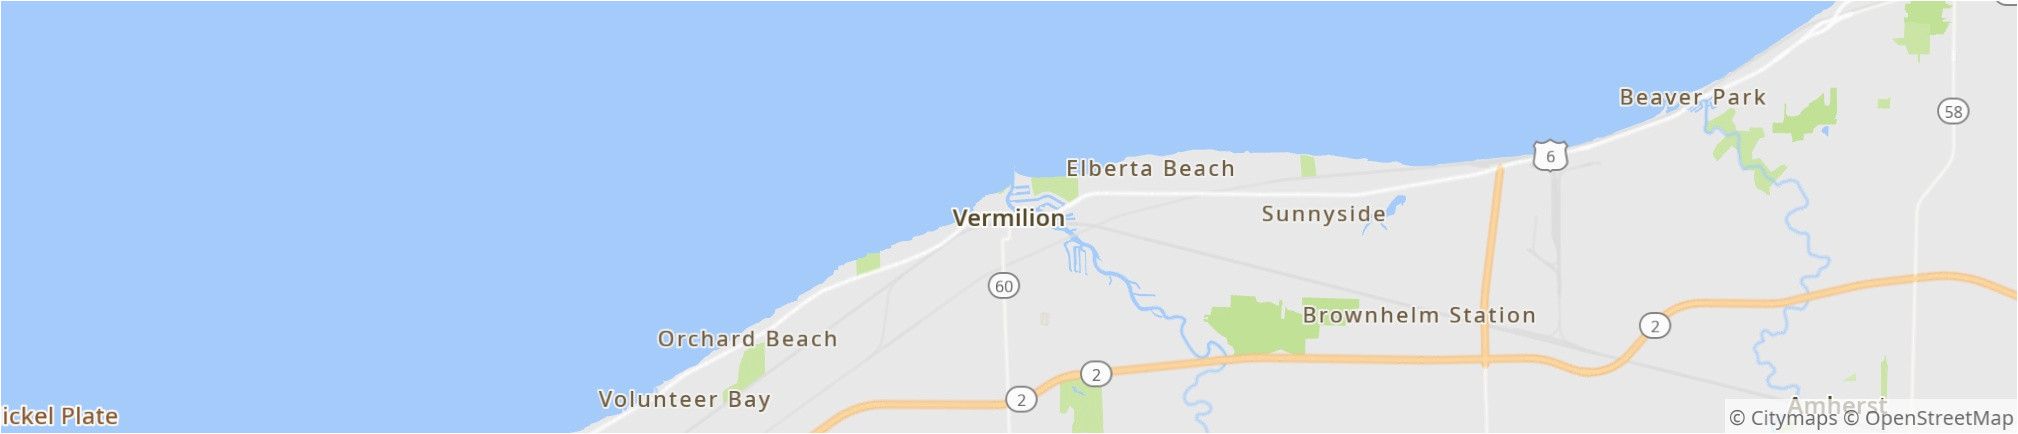 Vermilion Ohio Map Vermilion 2019 Best Of Vermilion Oh tourism Tripadvisor